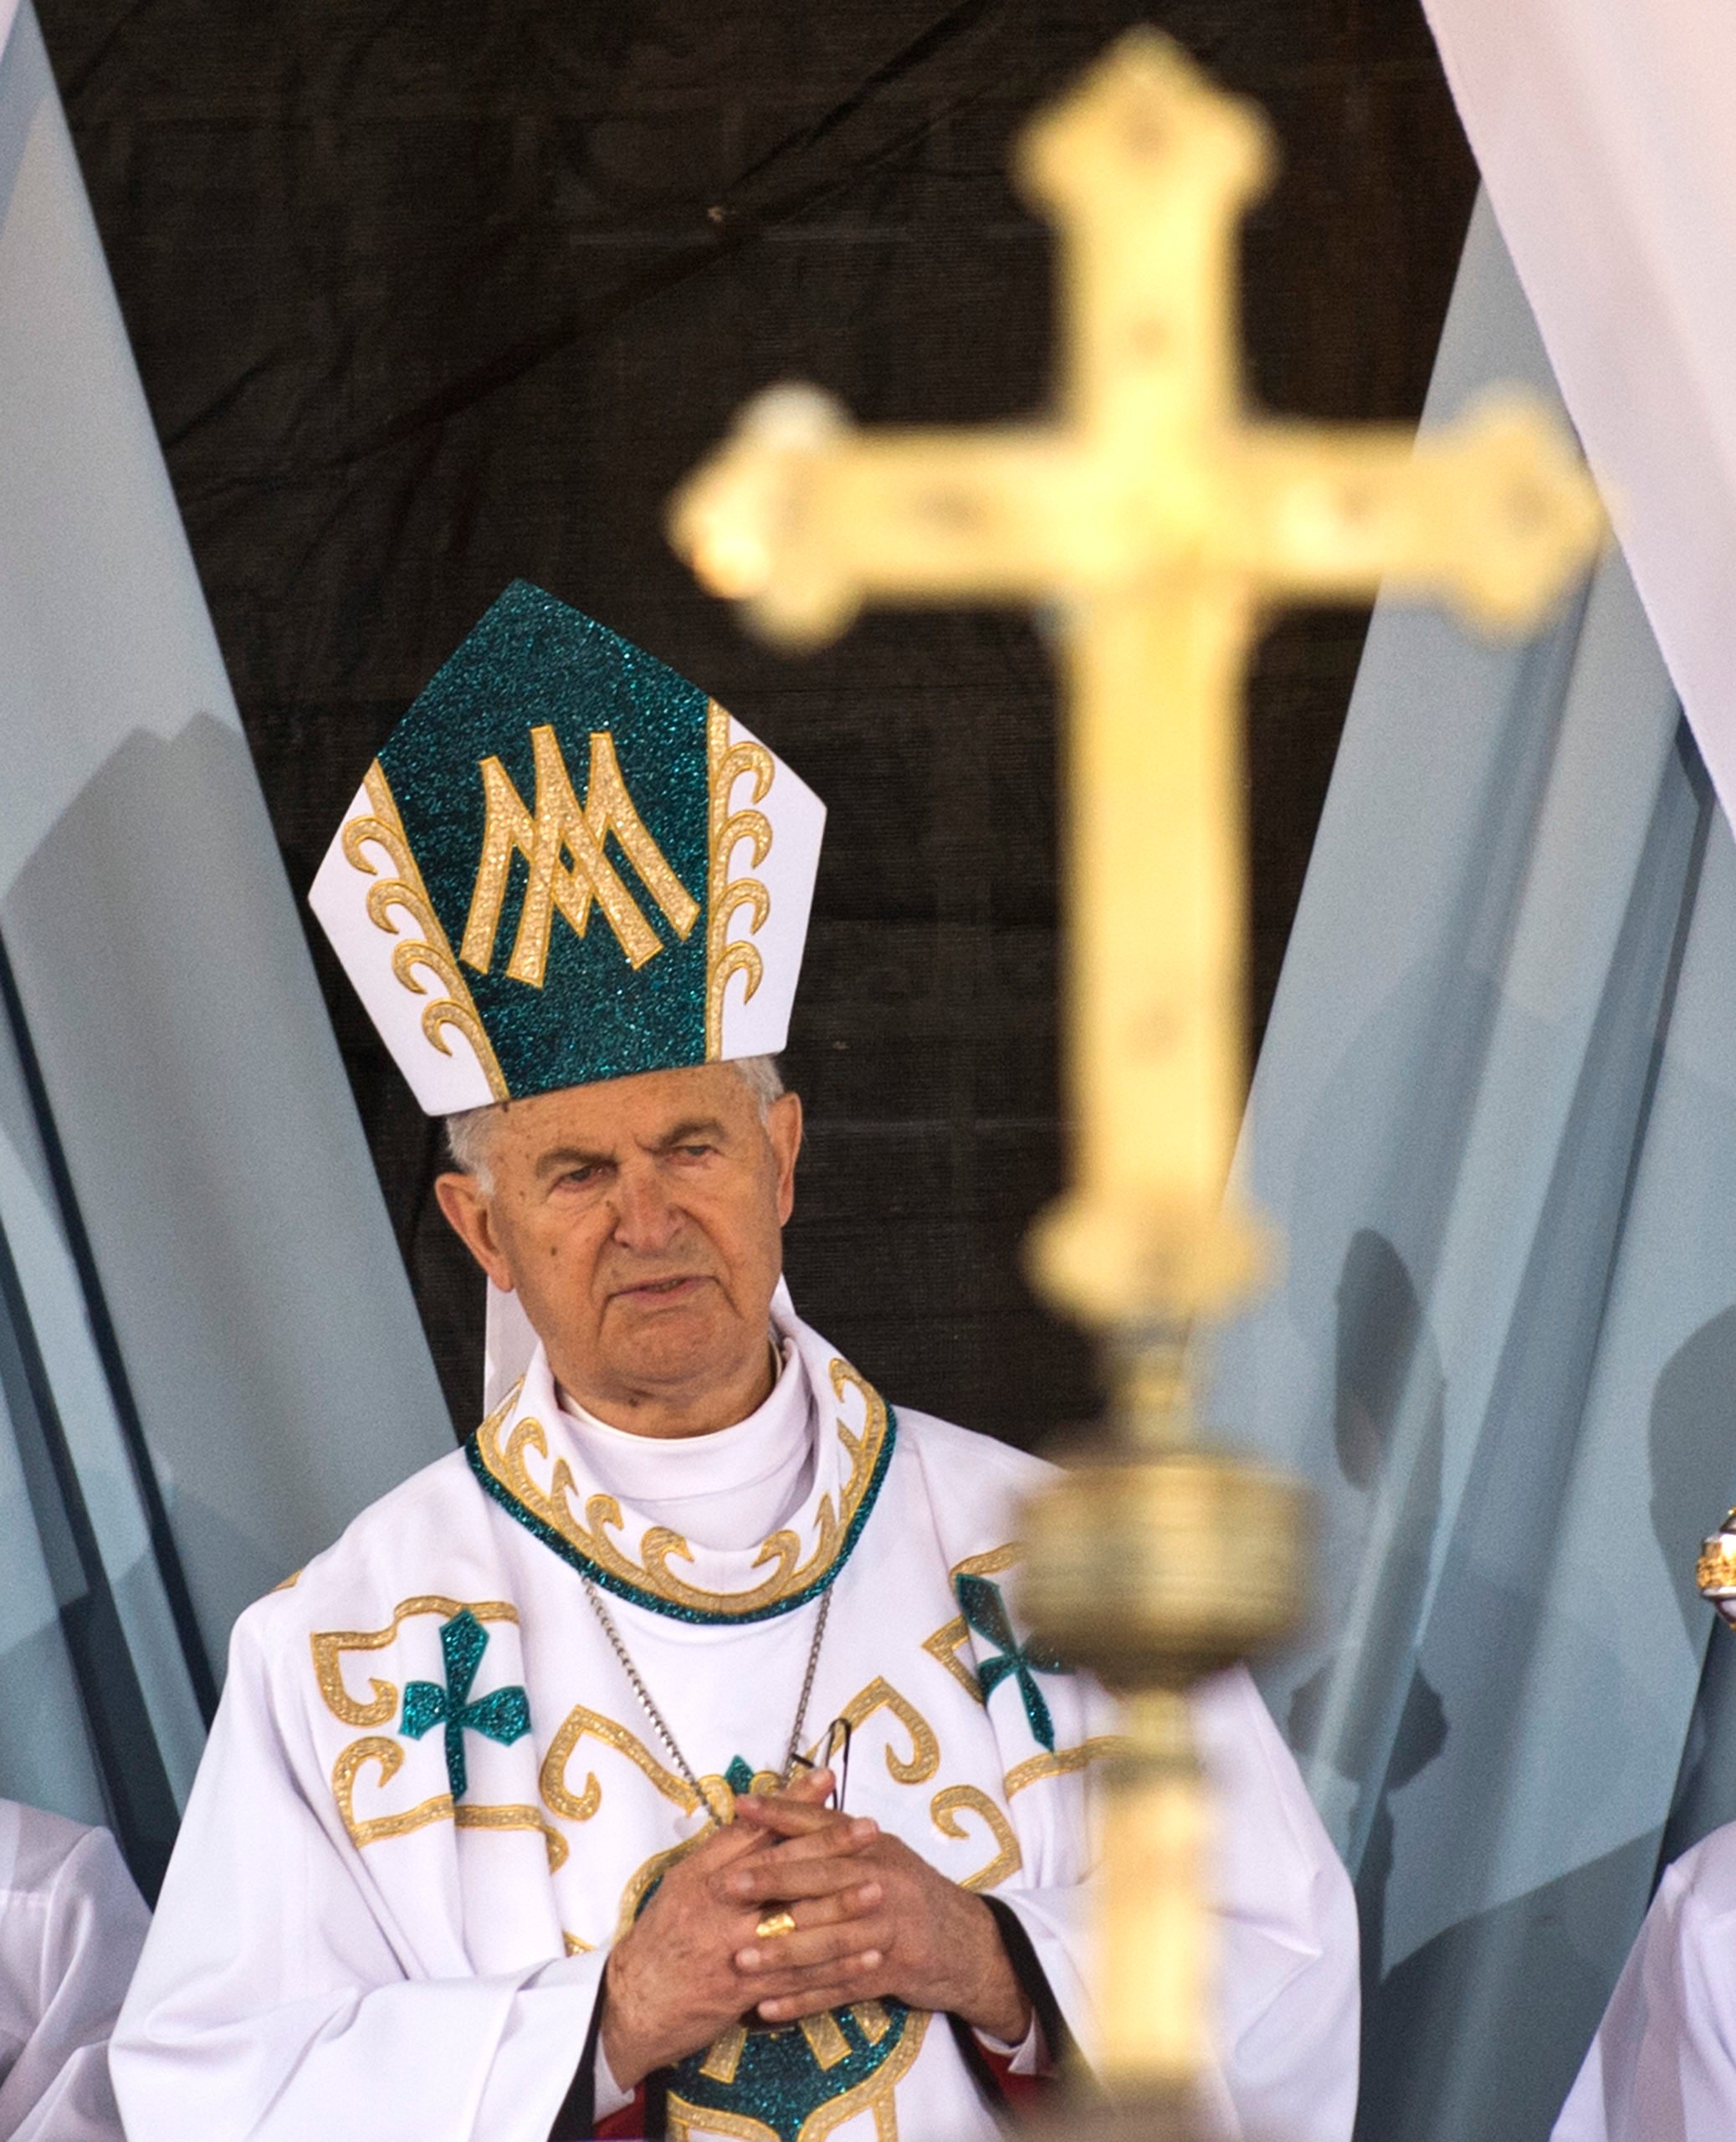 Na snímke je zachytený Kardinál Jozef Tomko